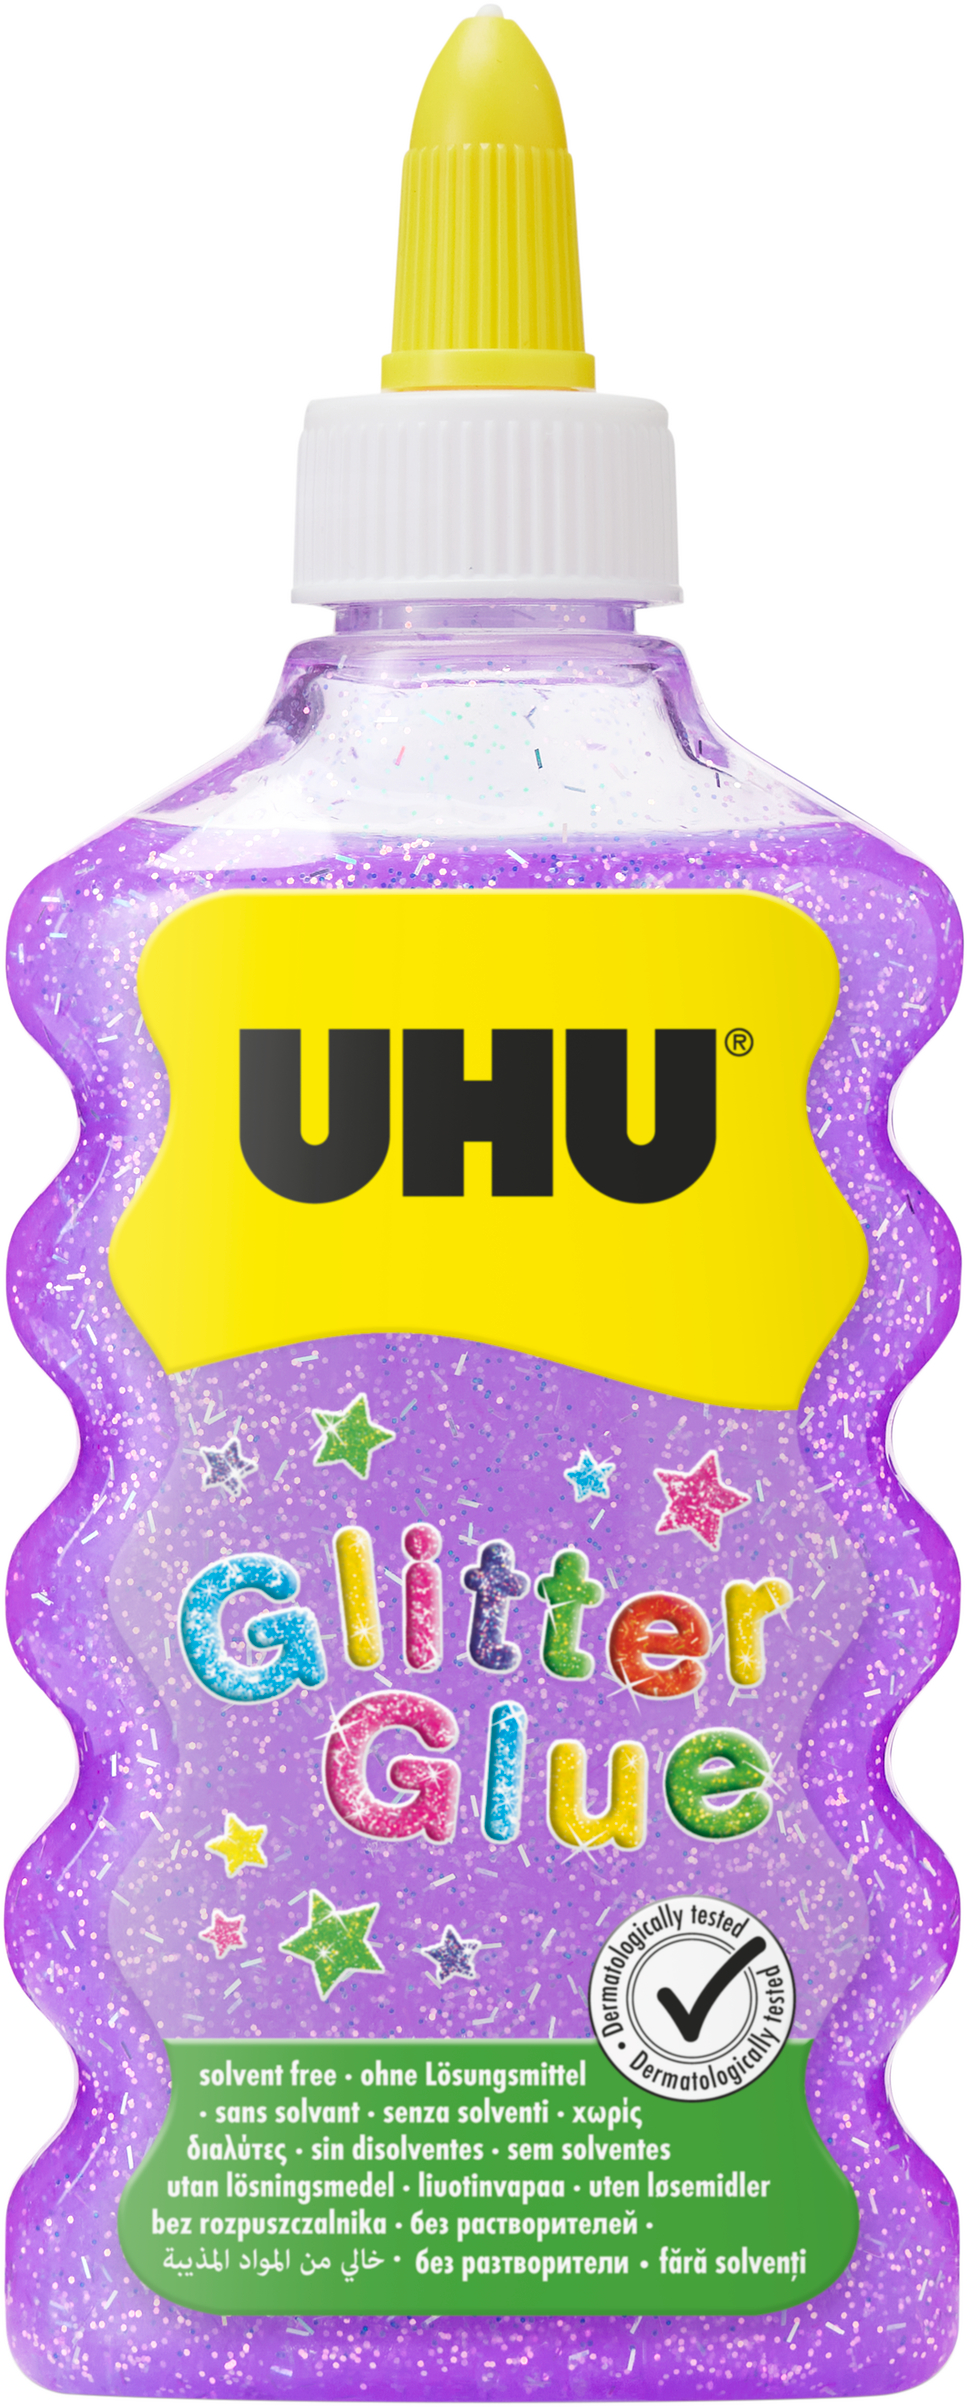 UHU Glitter Glue Maxi 510570 violet, 185g